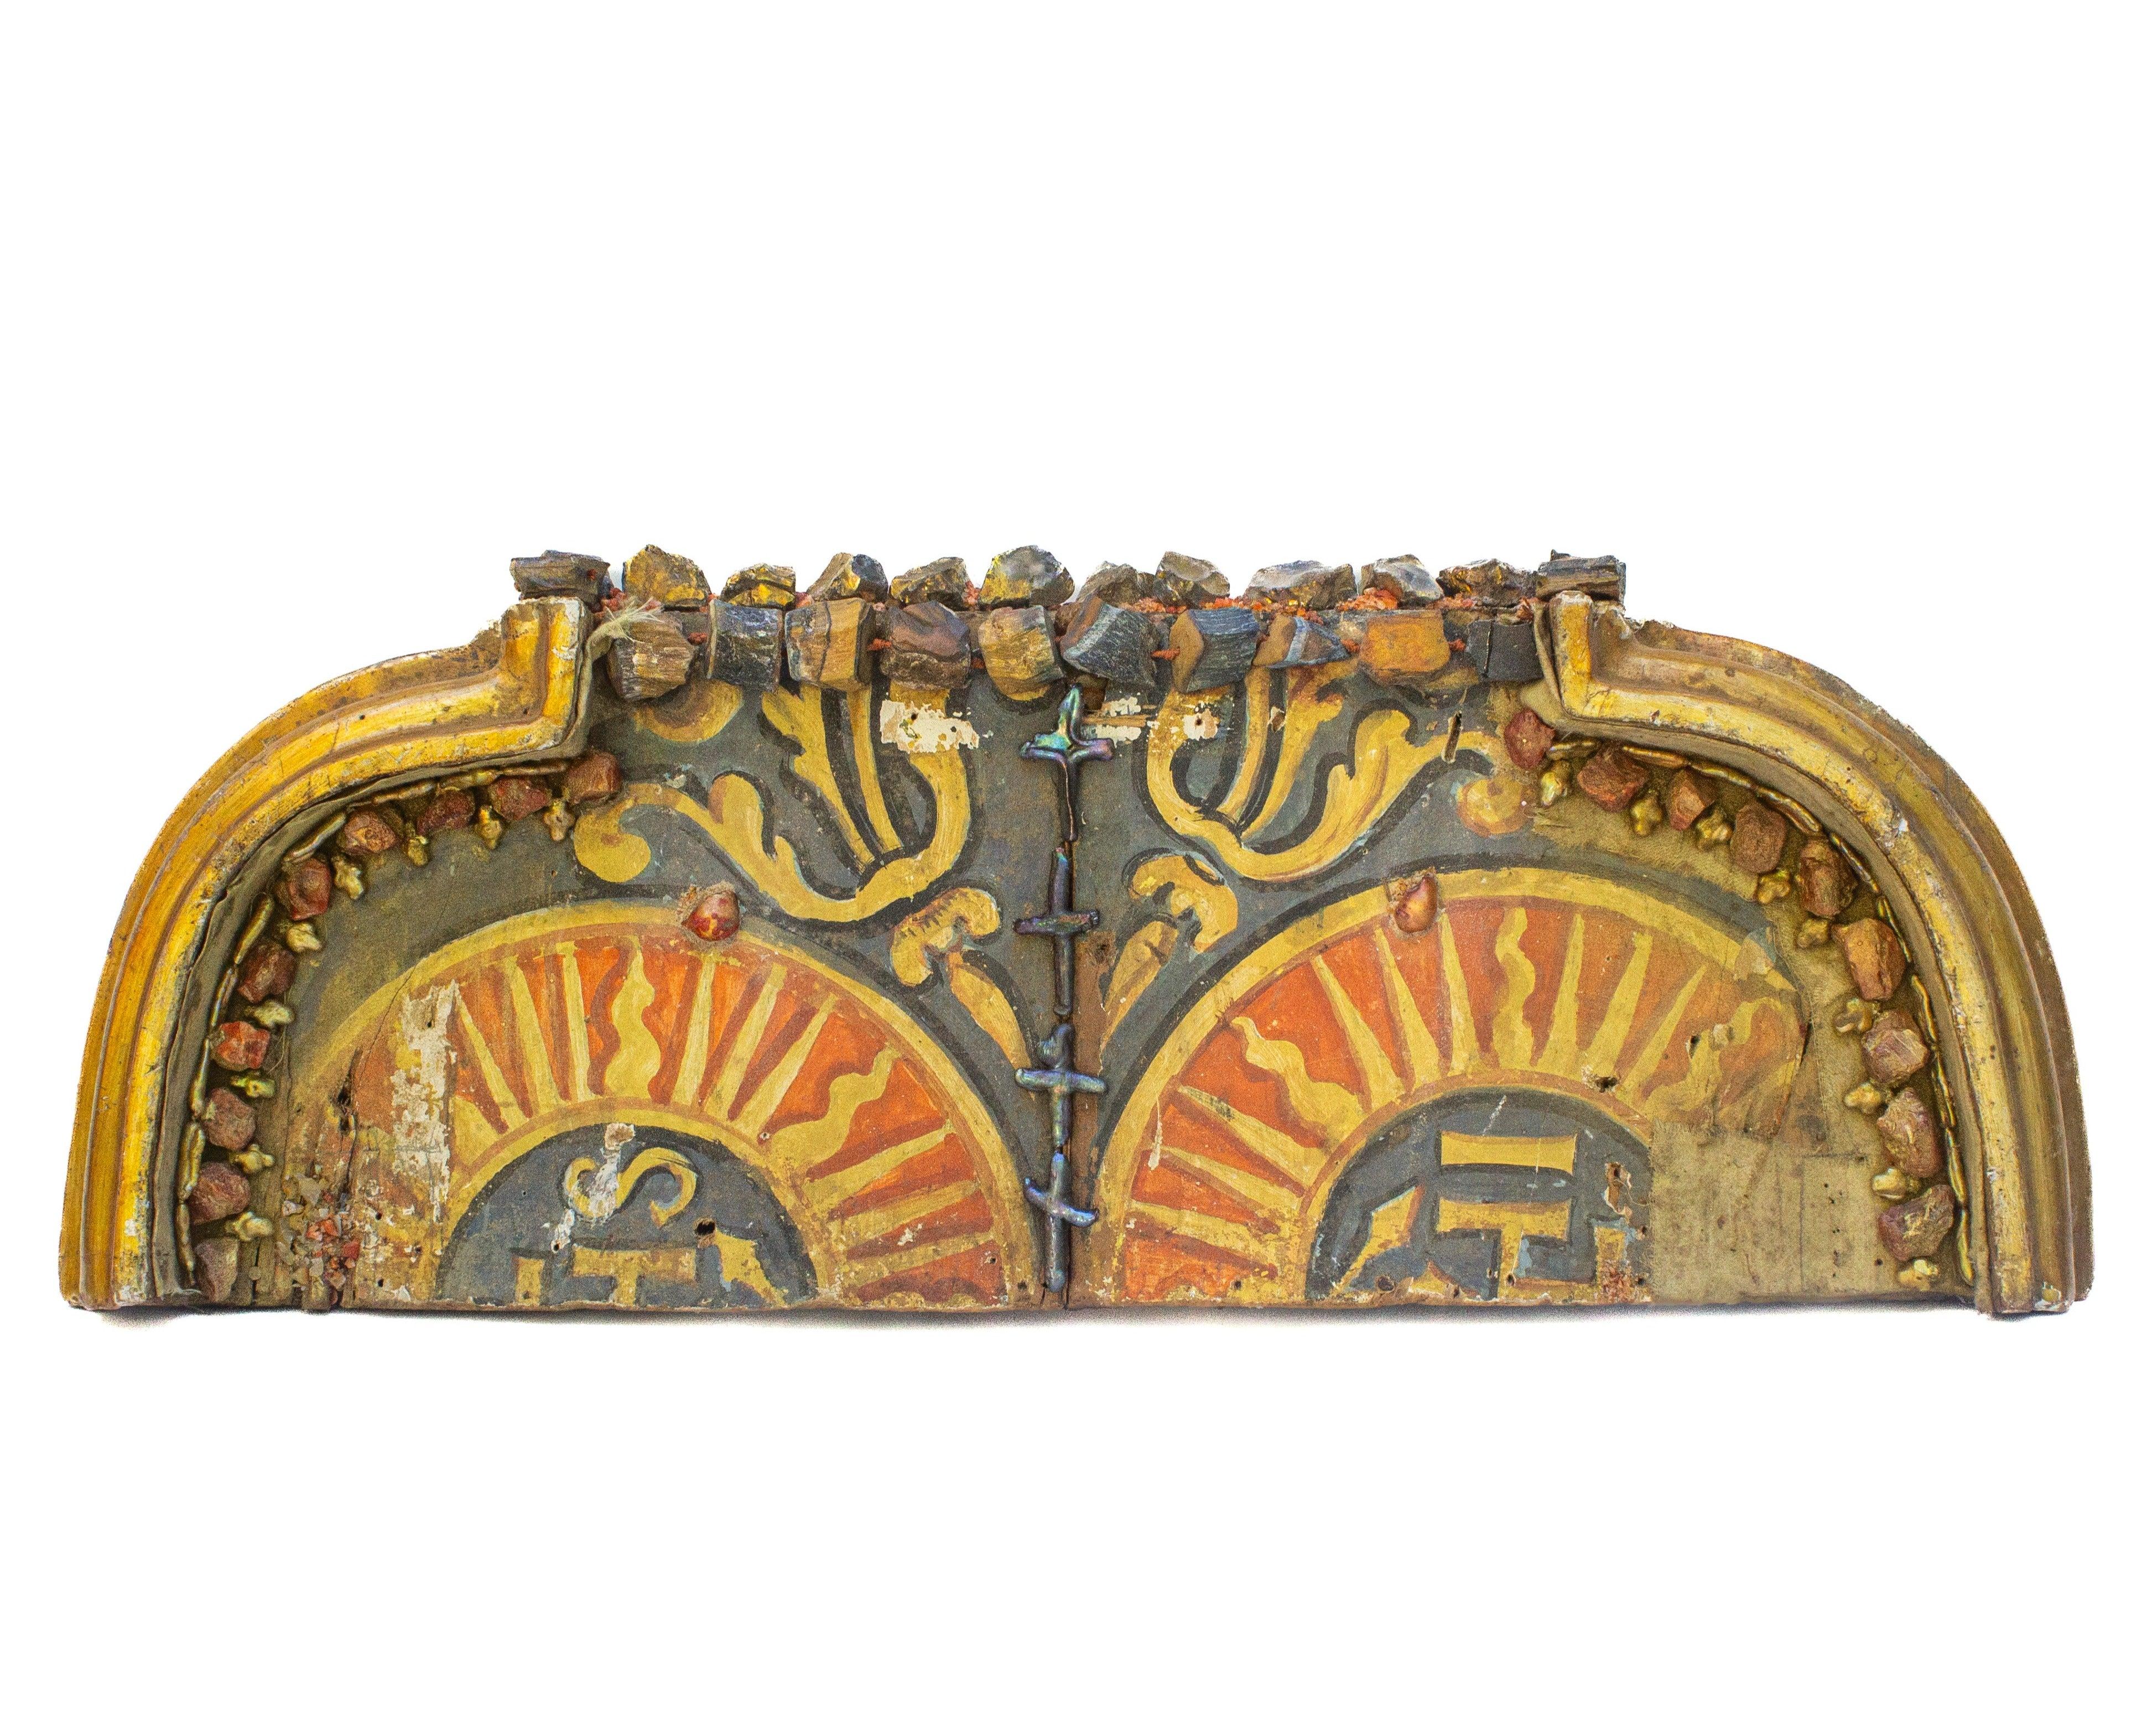 Italienisches, handbemaltes, kirchliches Architekturelement aus dem 17. Jahrhundert, verziert mit Karneolkieseln, vergoldeten Kristallen, blauem und gelbem Rohachat und Barockperlen.

Das Fragment stammt aus dem Inneren eines Kirchenaltars und